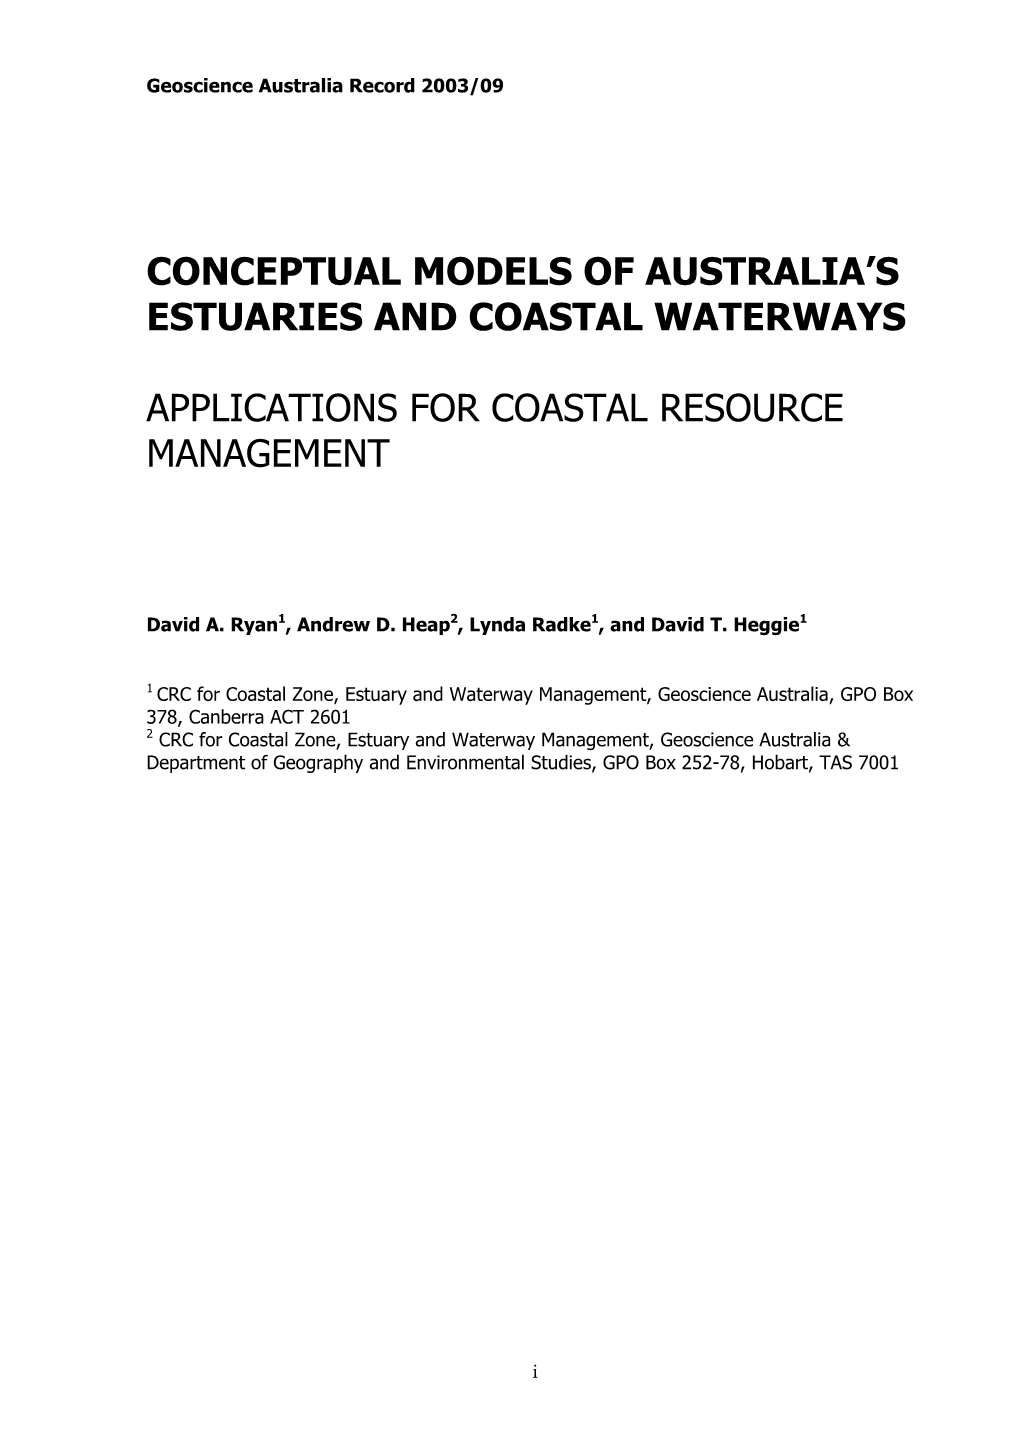 Conceptual Models of Australia's Estuaries And